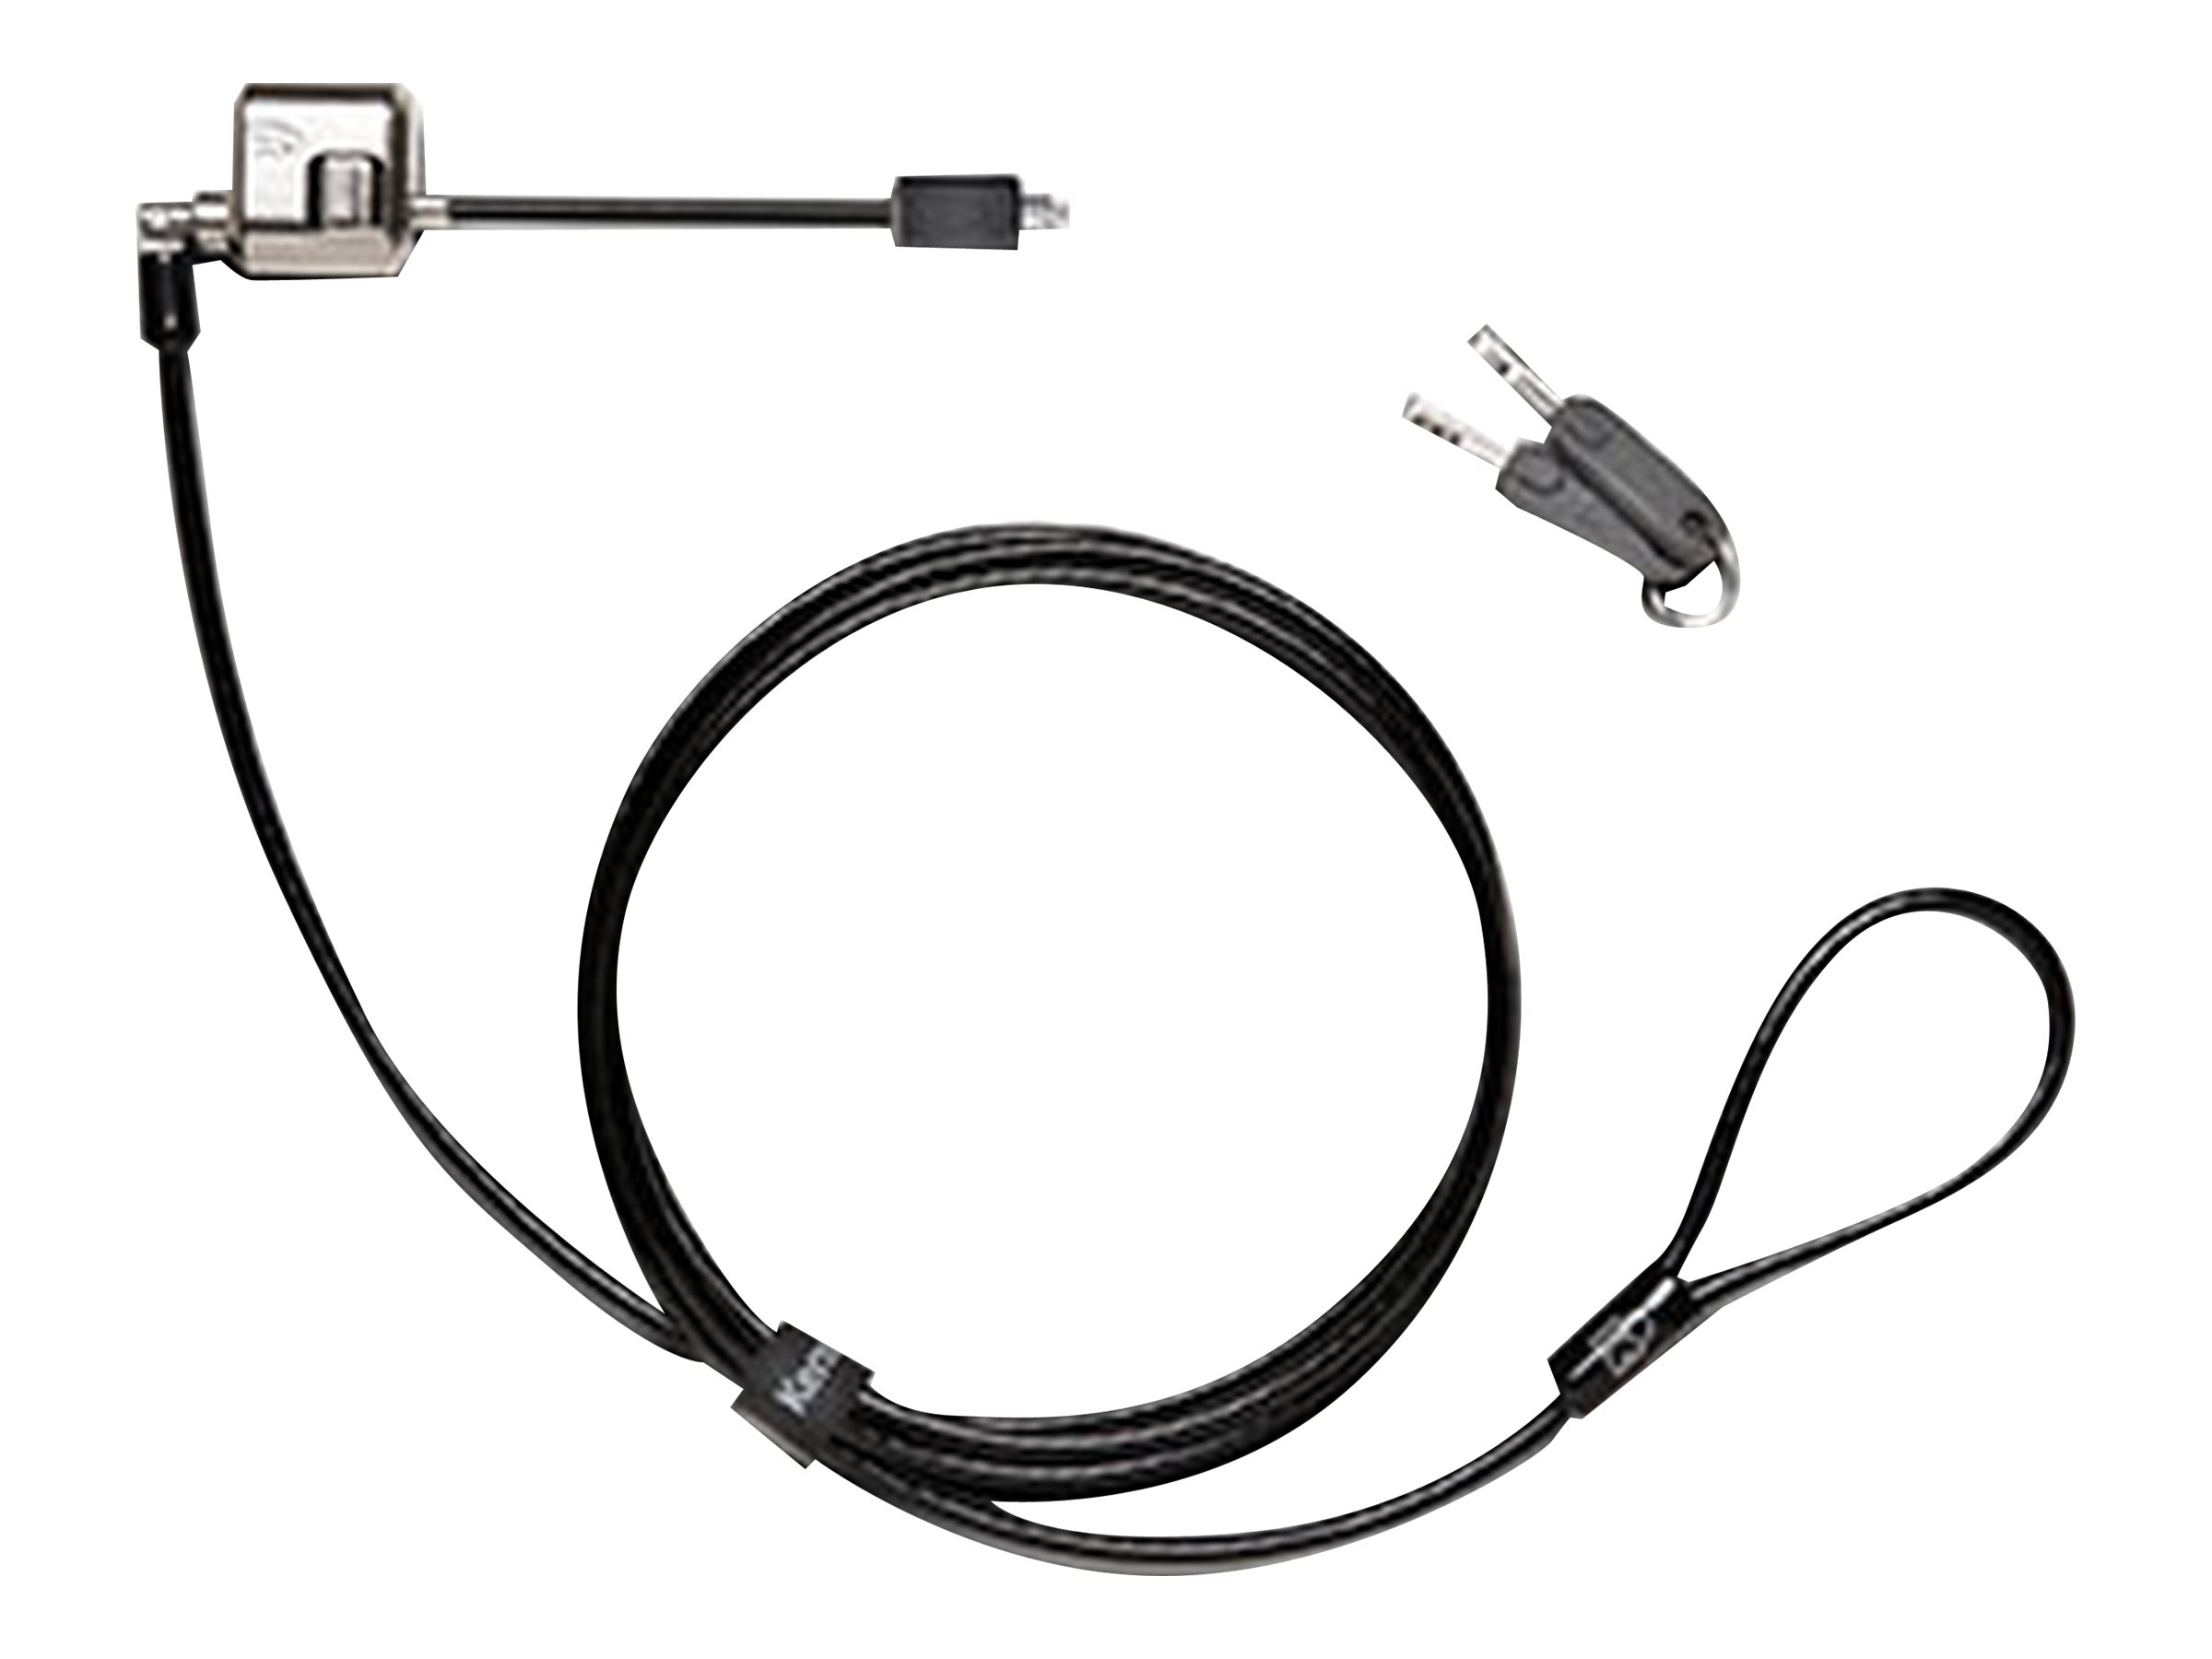 Kensington MiniSaver Mobile Lock - Câble pour verrouillage notebook - noir - 1.8 m - K67890WW - Accessoires pour ordinateur portable et tablette